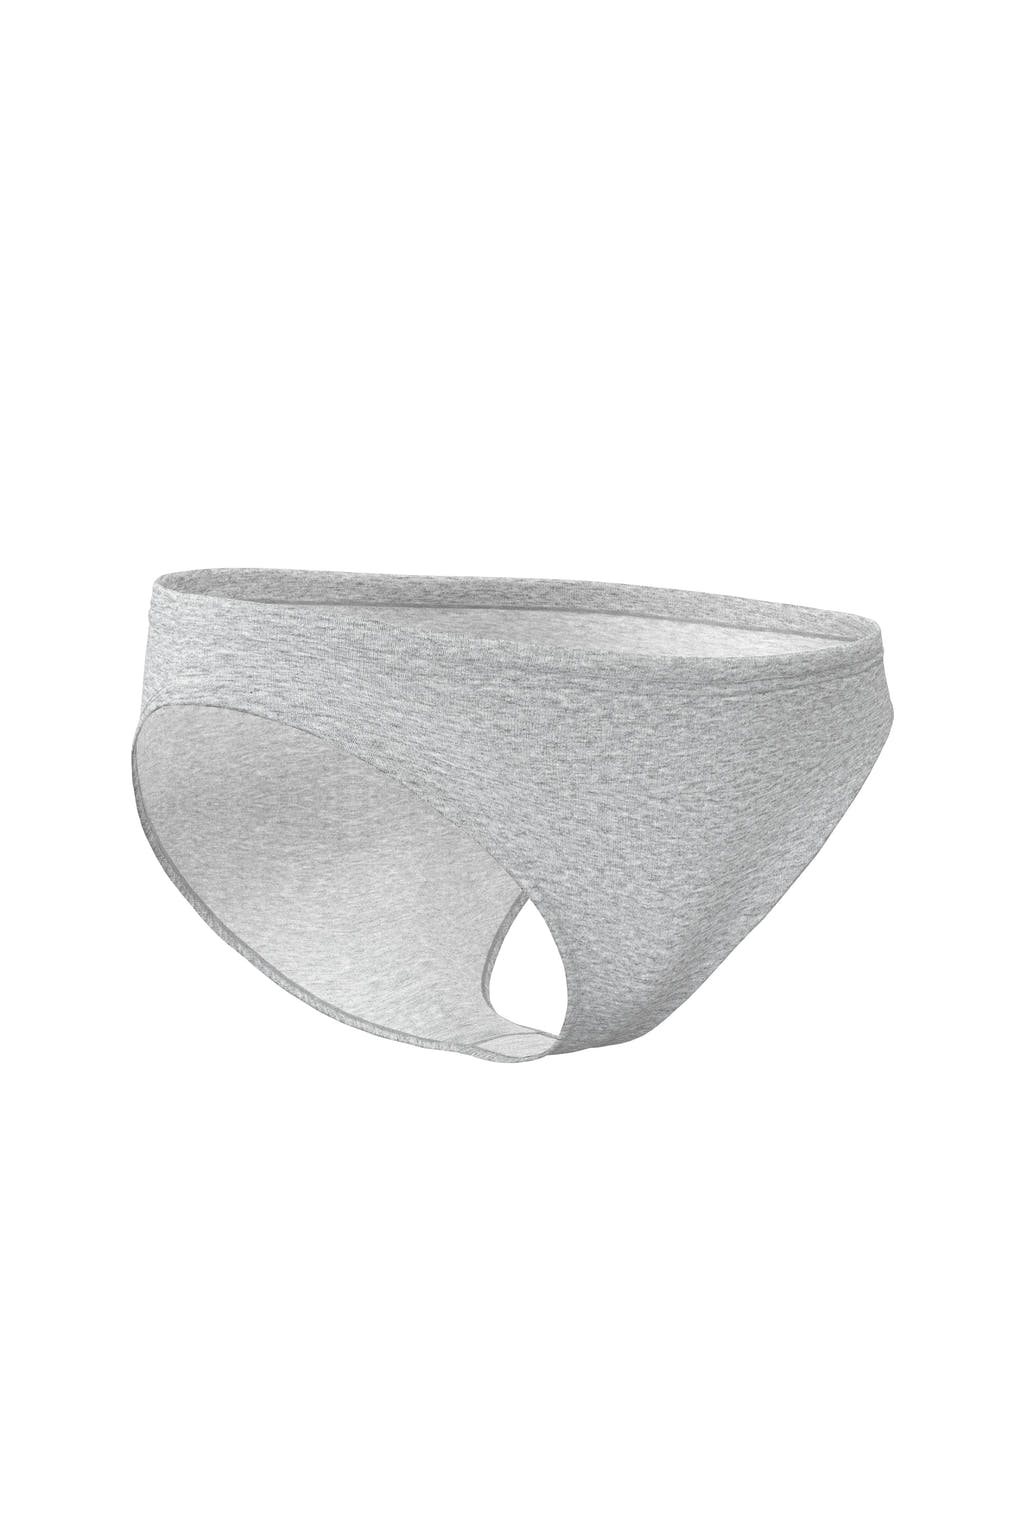 underwear plain gray